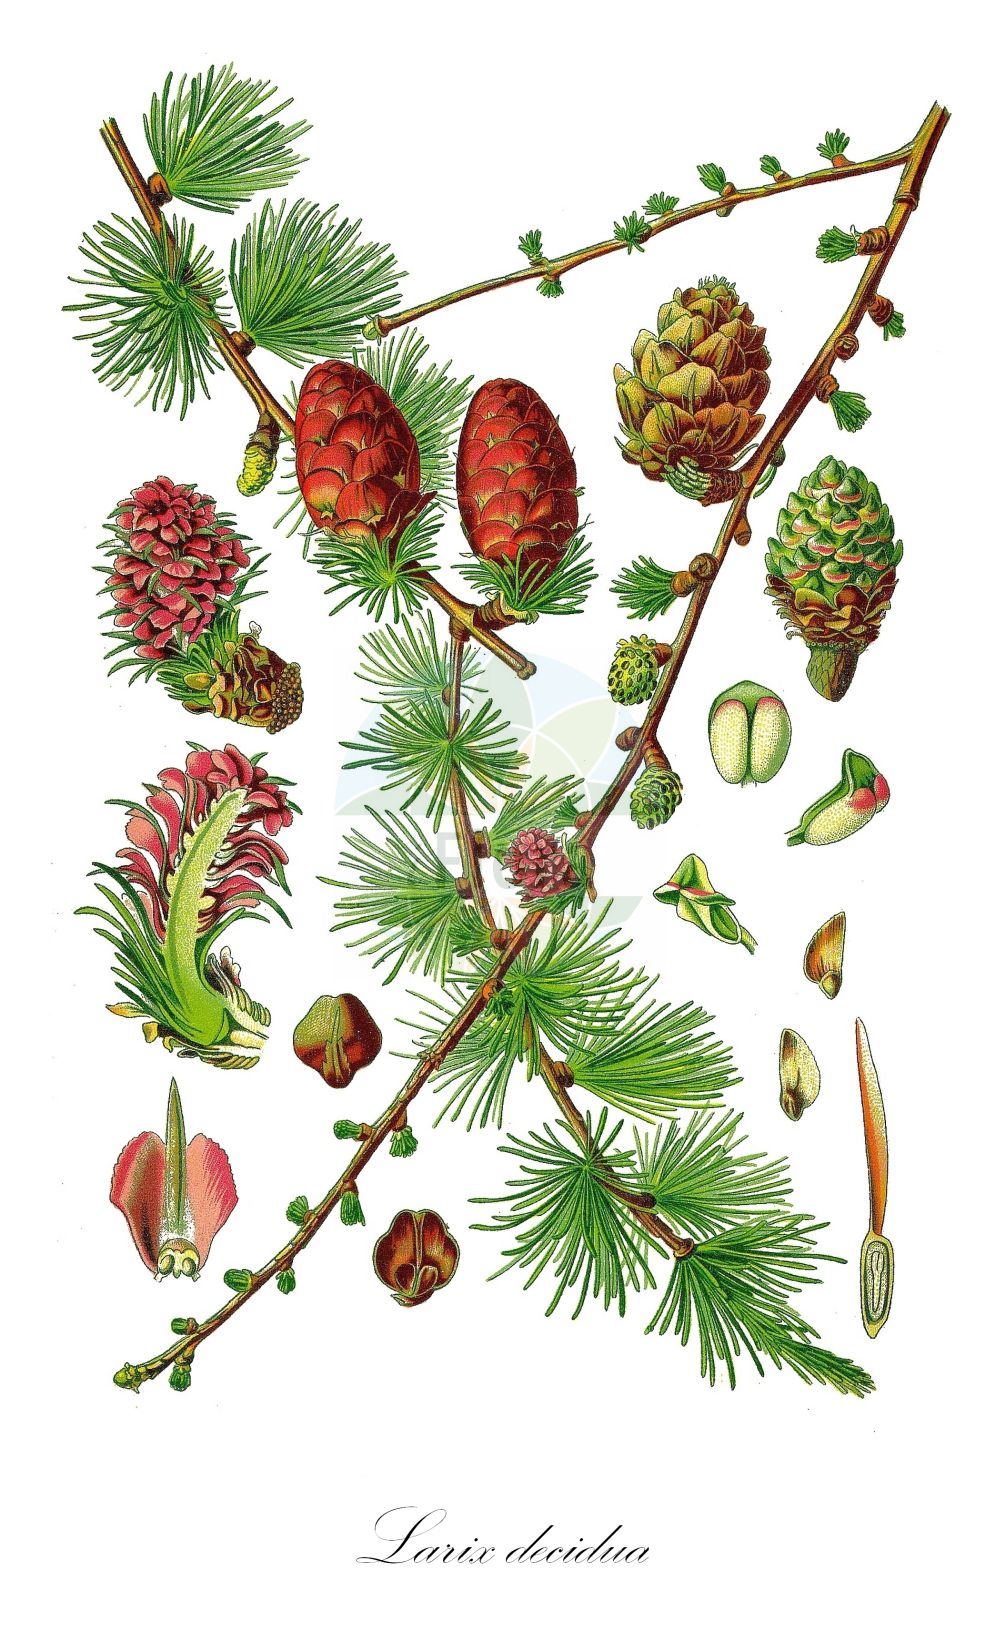 Historische Abbildung von Larix decidua (Europäische Lärche - European Larch). ---- Historical Drawing of Larix decidua (Europäische Lärche - European Larch).(Larix decidua,Europäische Lärche,European Larch,Larix decidua,Larix europaea,Pinus larix,Europaeische Laerche,European Larch,Common Larch,Larch,White Larch,Larix,Lärche,Larch,Pinaceae,Kieferngewächse,Pine family,Thomé (1885))